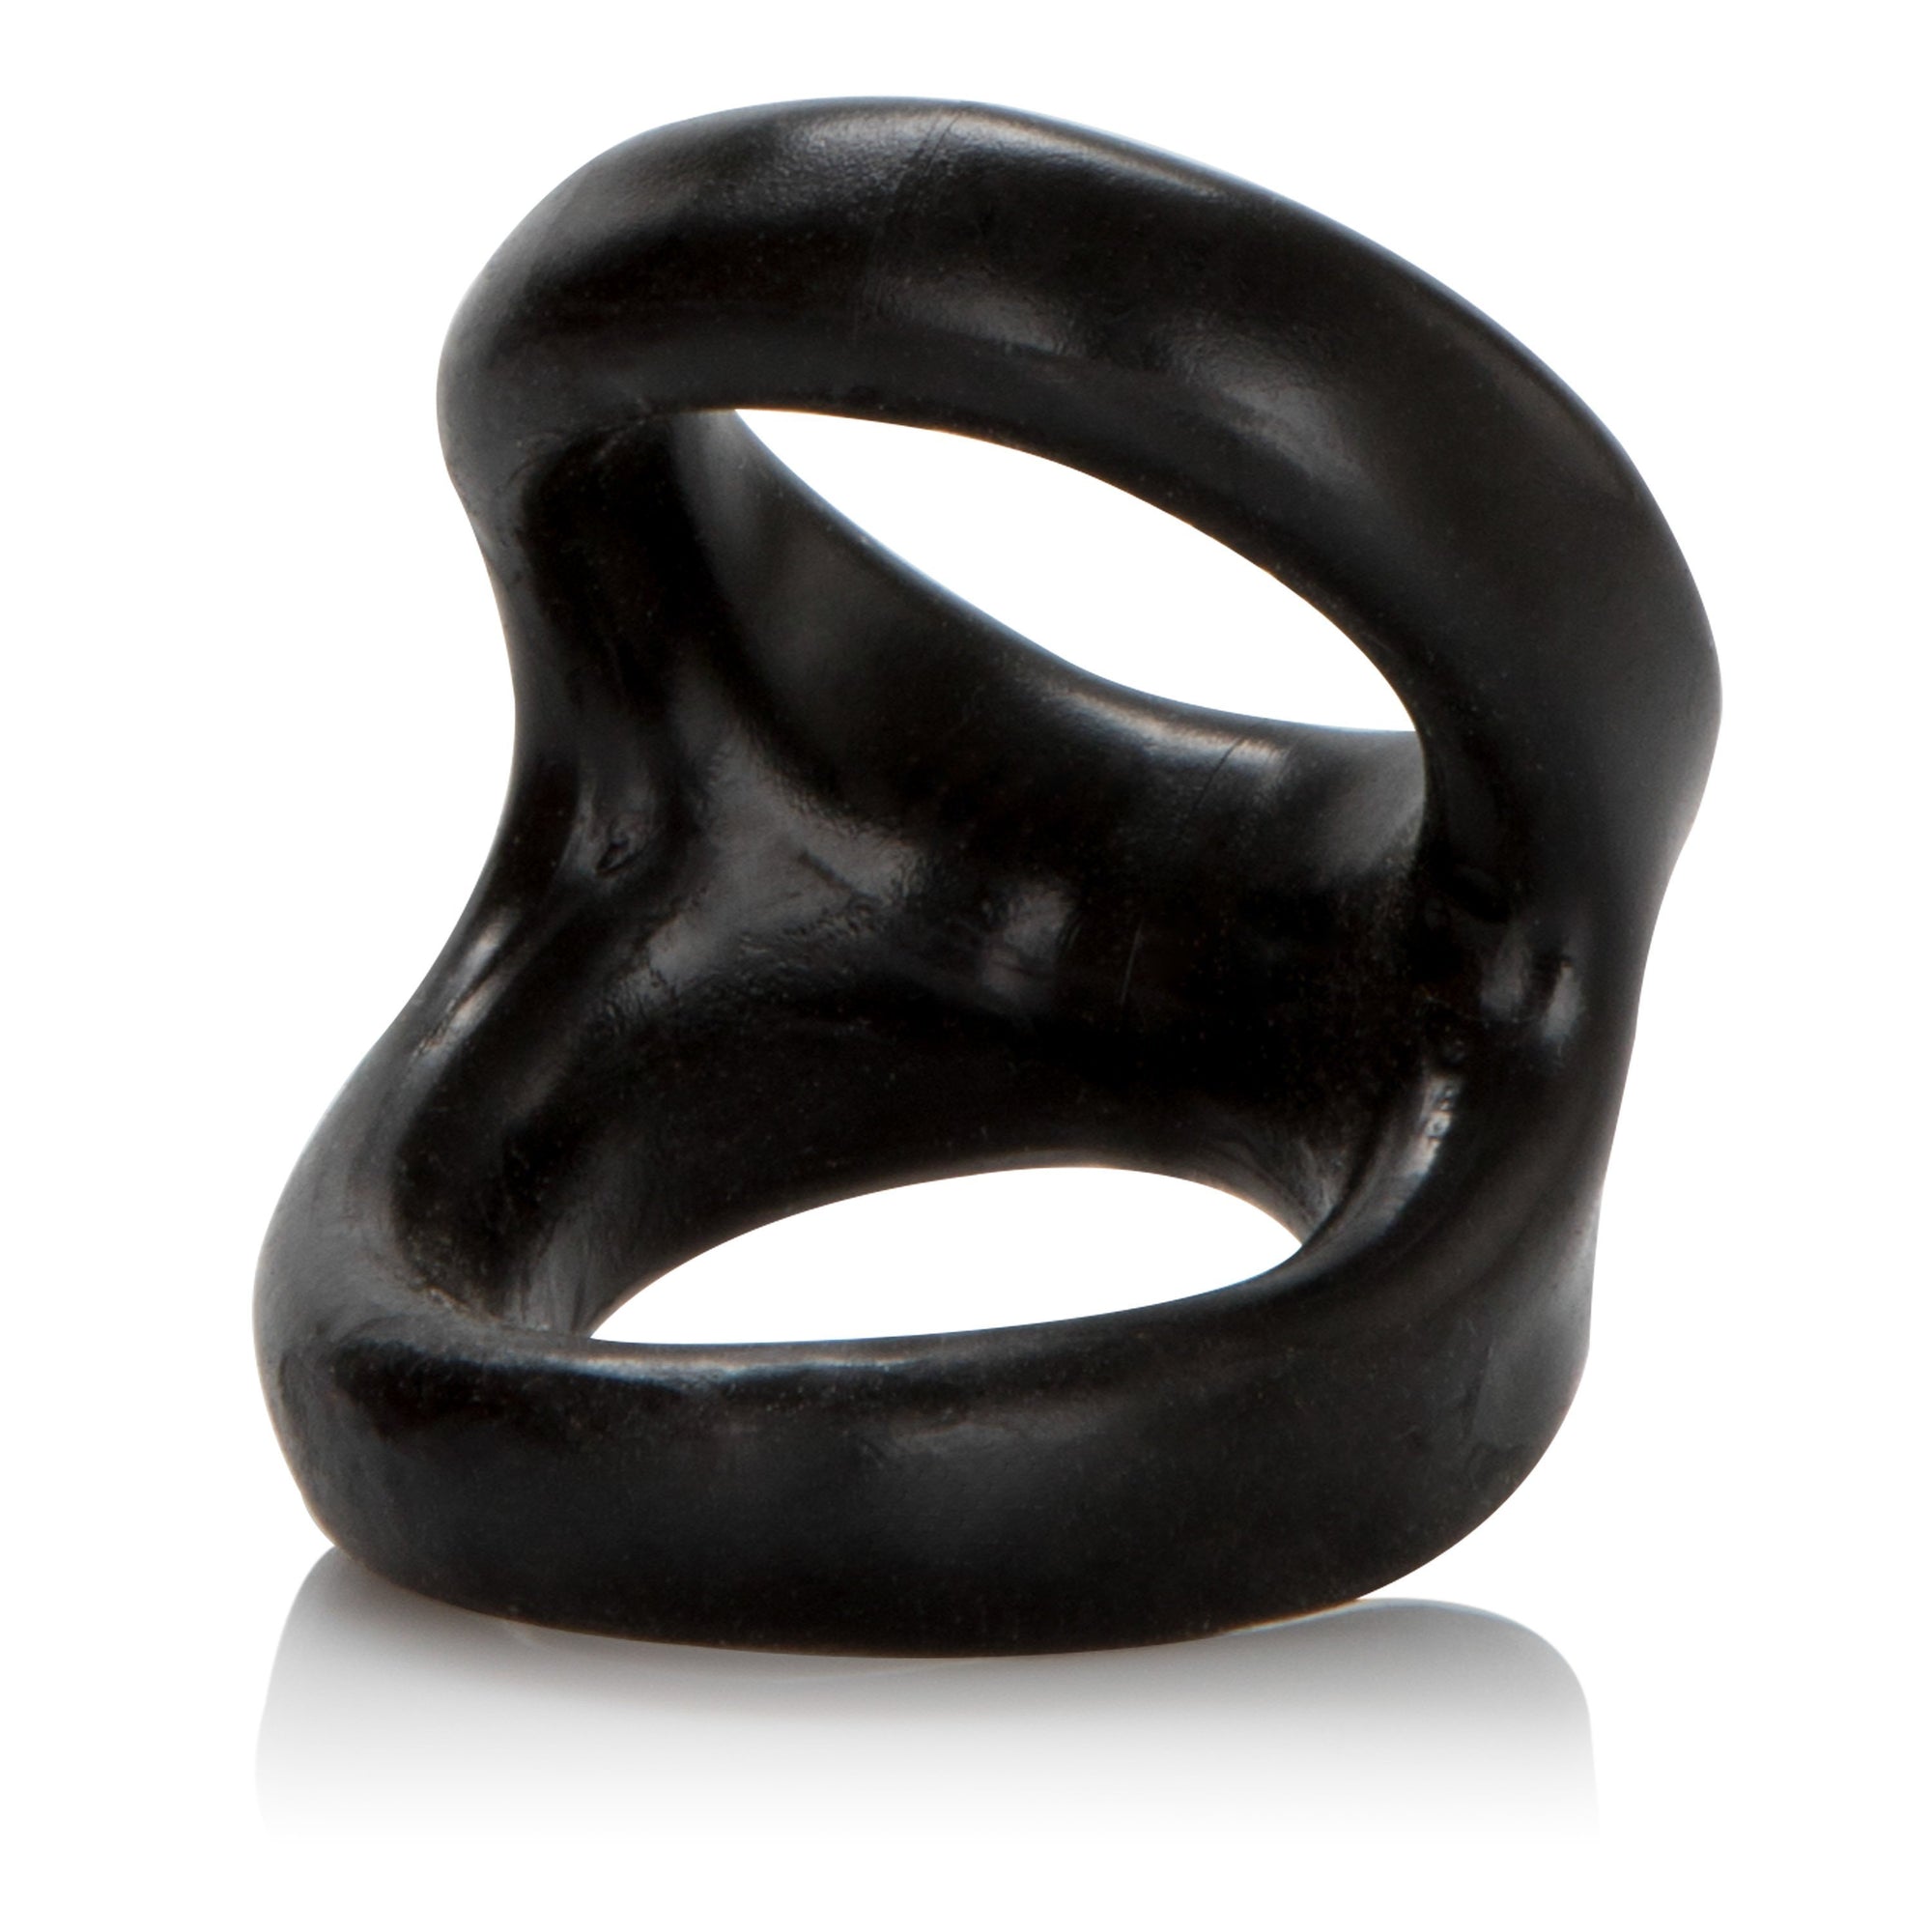 Colt - Snug Tugger Cock Ring (Black) Rubber Cock Ring (Non Vibration) Singapore